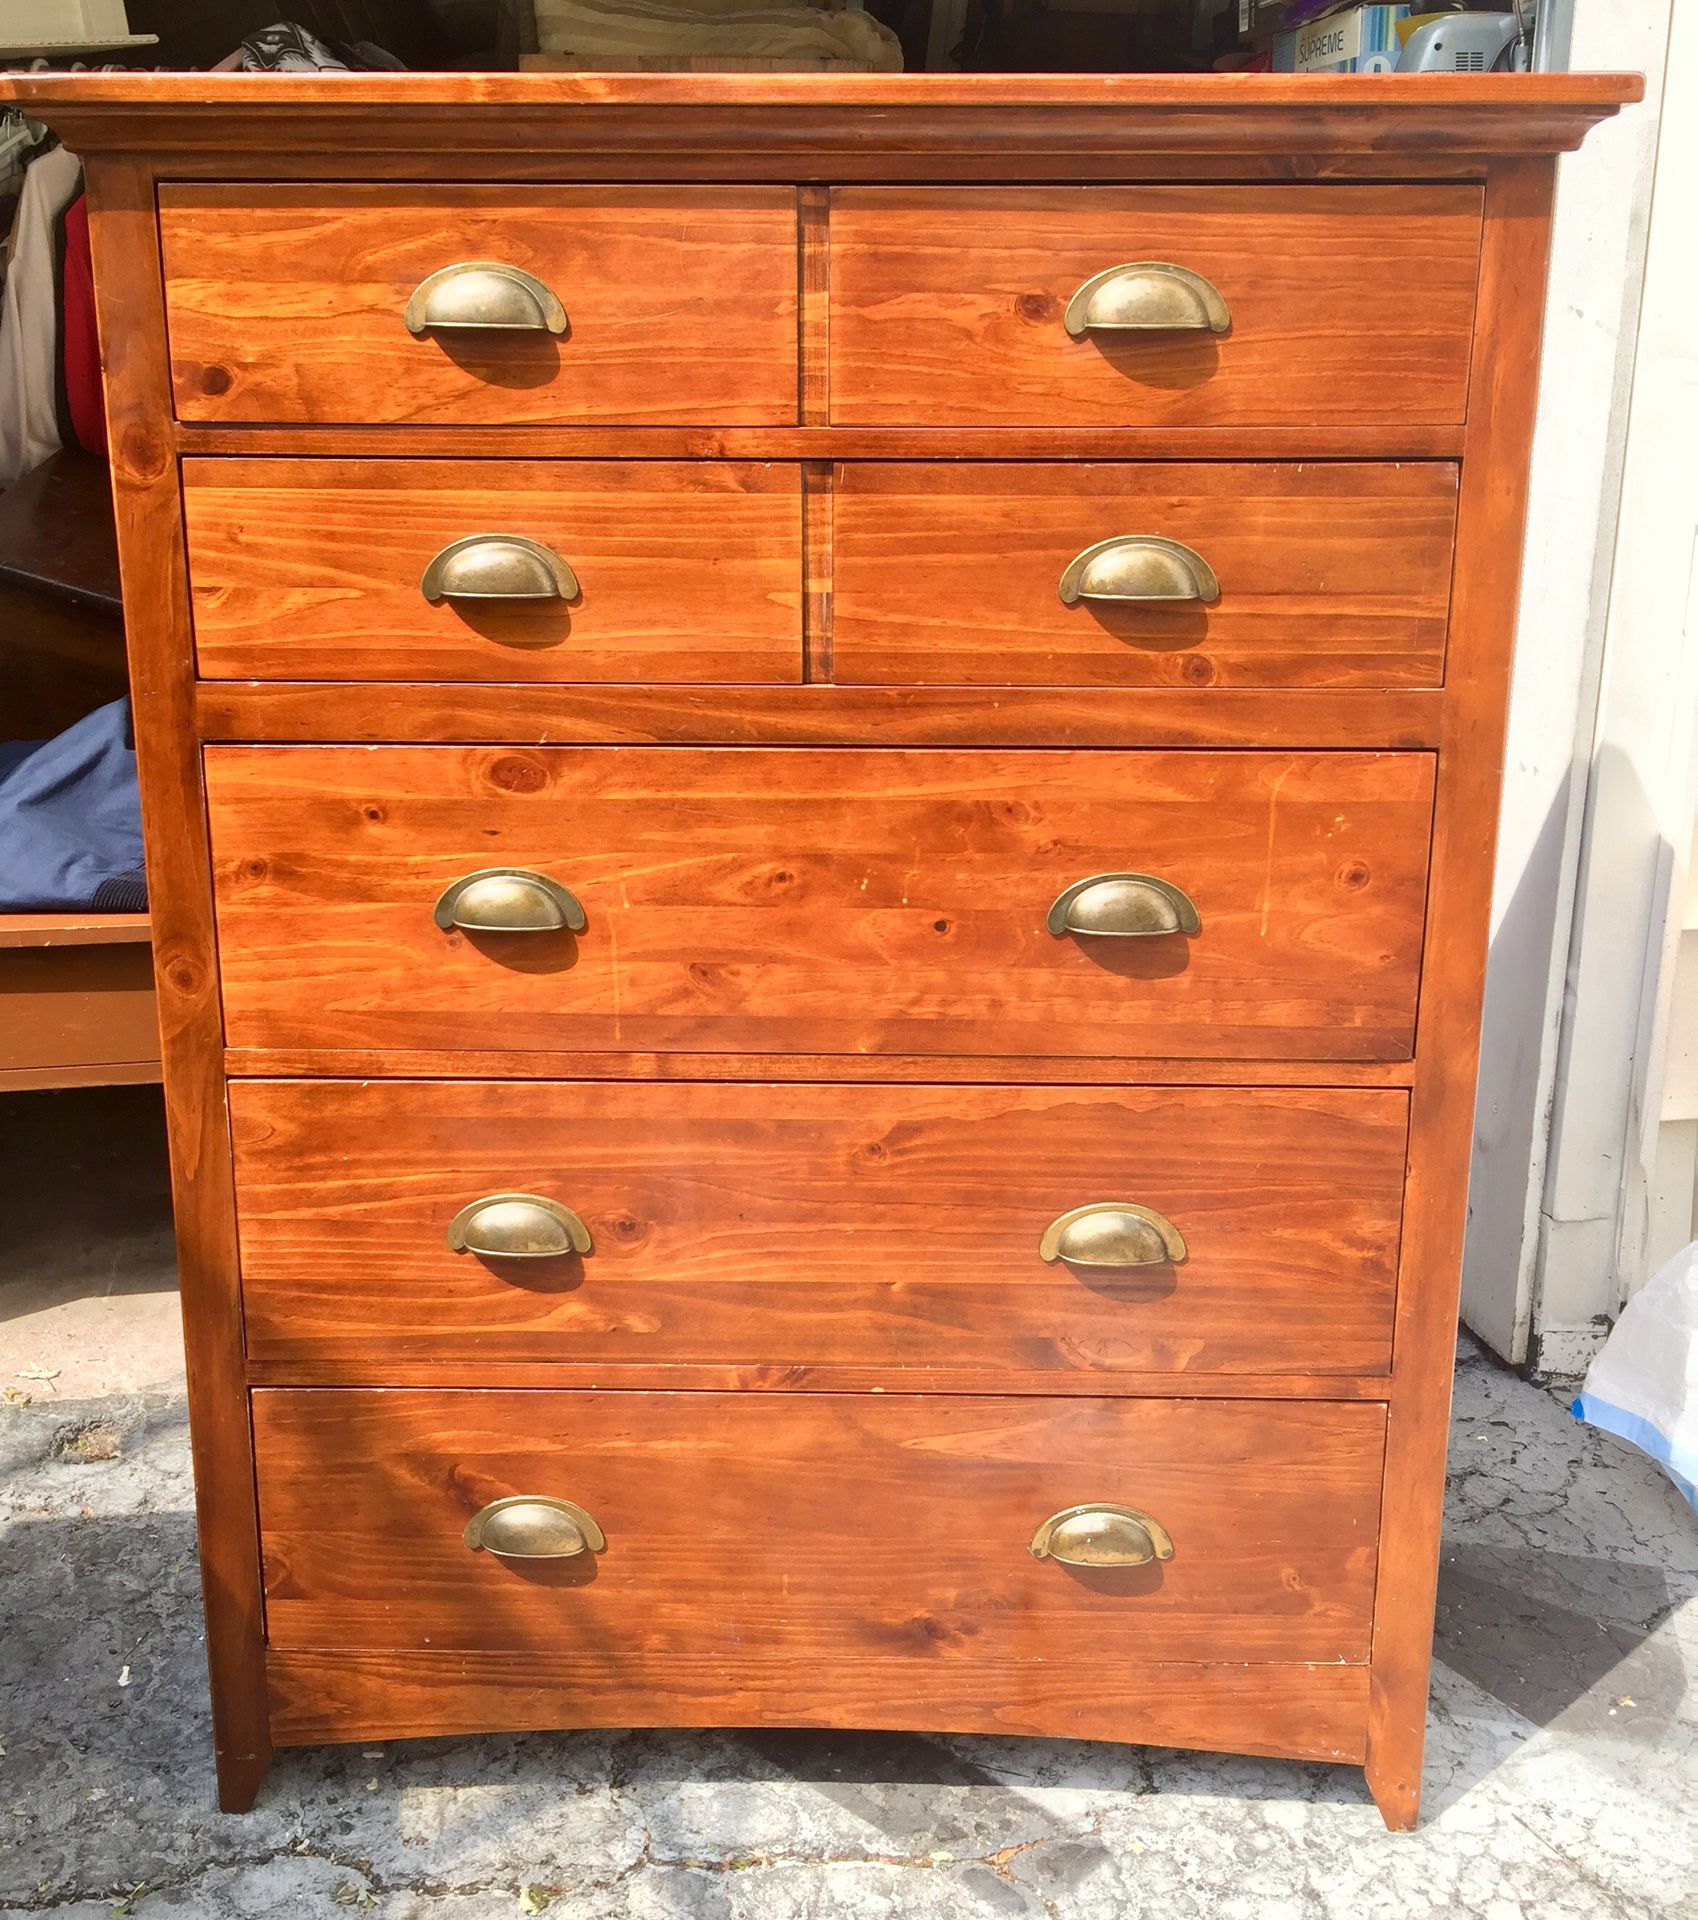 Solid wood tallboy dresser